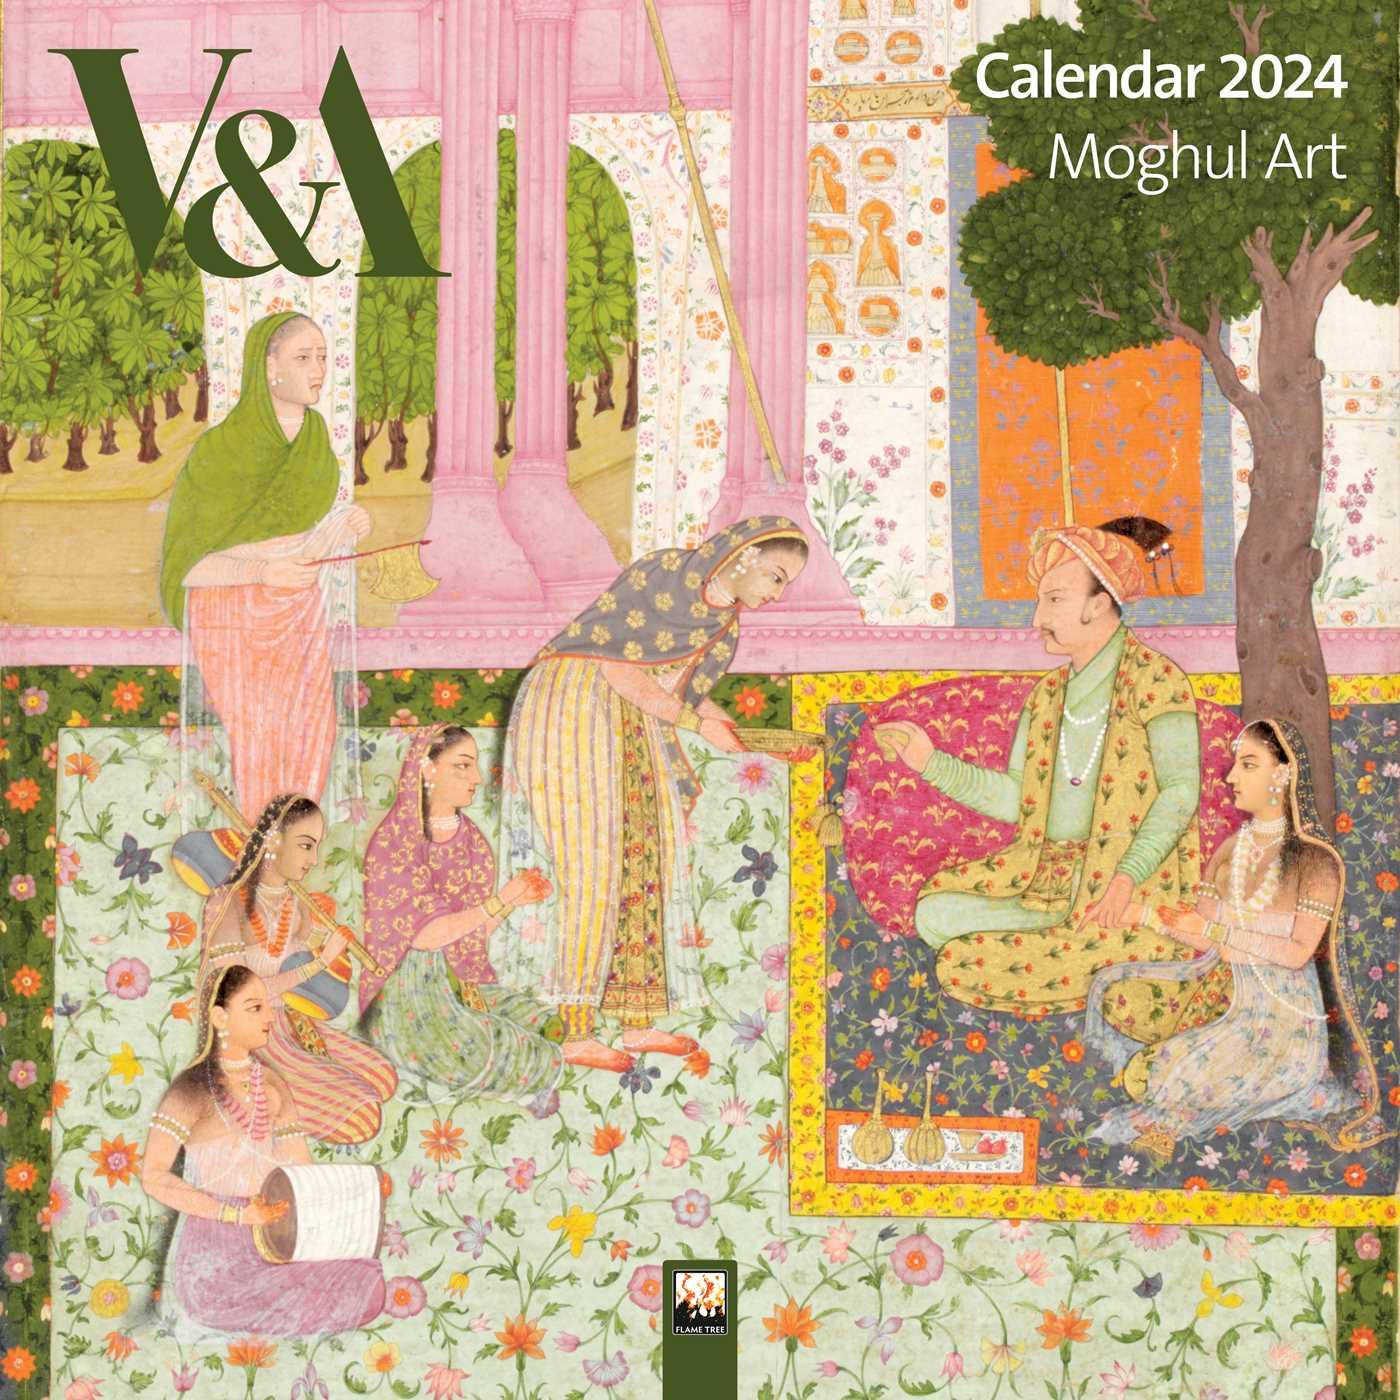 Calendar/Diary V&a: Moghul Art Wall Calendar 2024 (Art Calendar) 